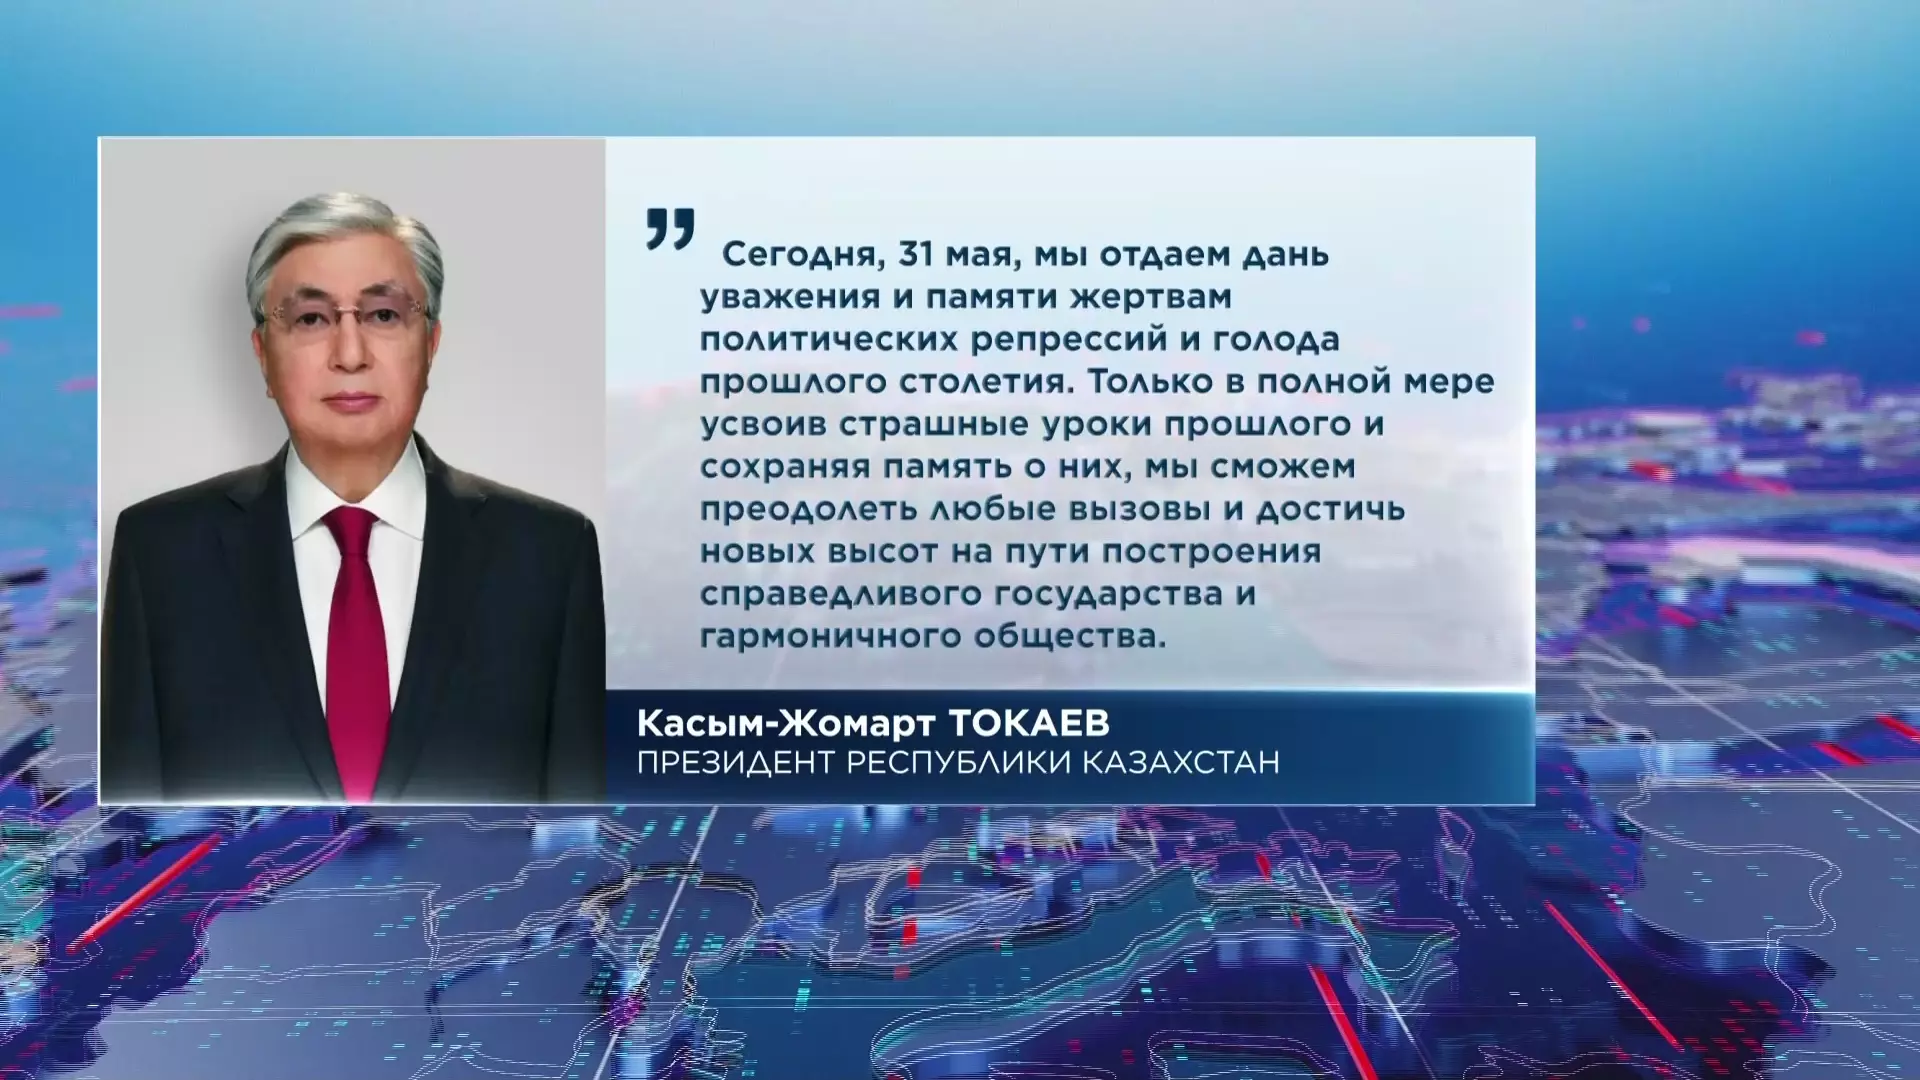 Касым-Жомарт Токаев обратился к казахстанцам в связи с Днем памяти жертв политических репрессий